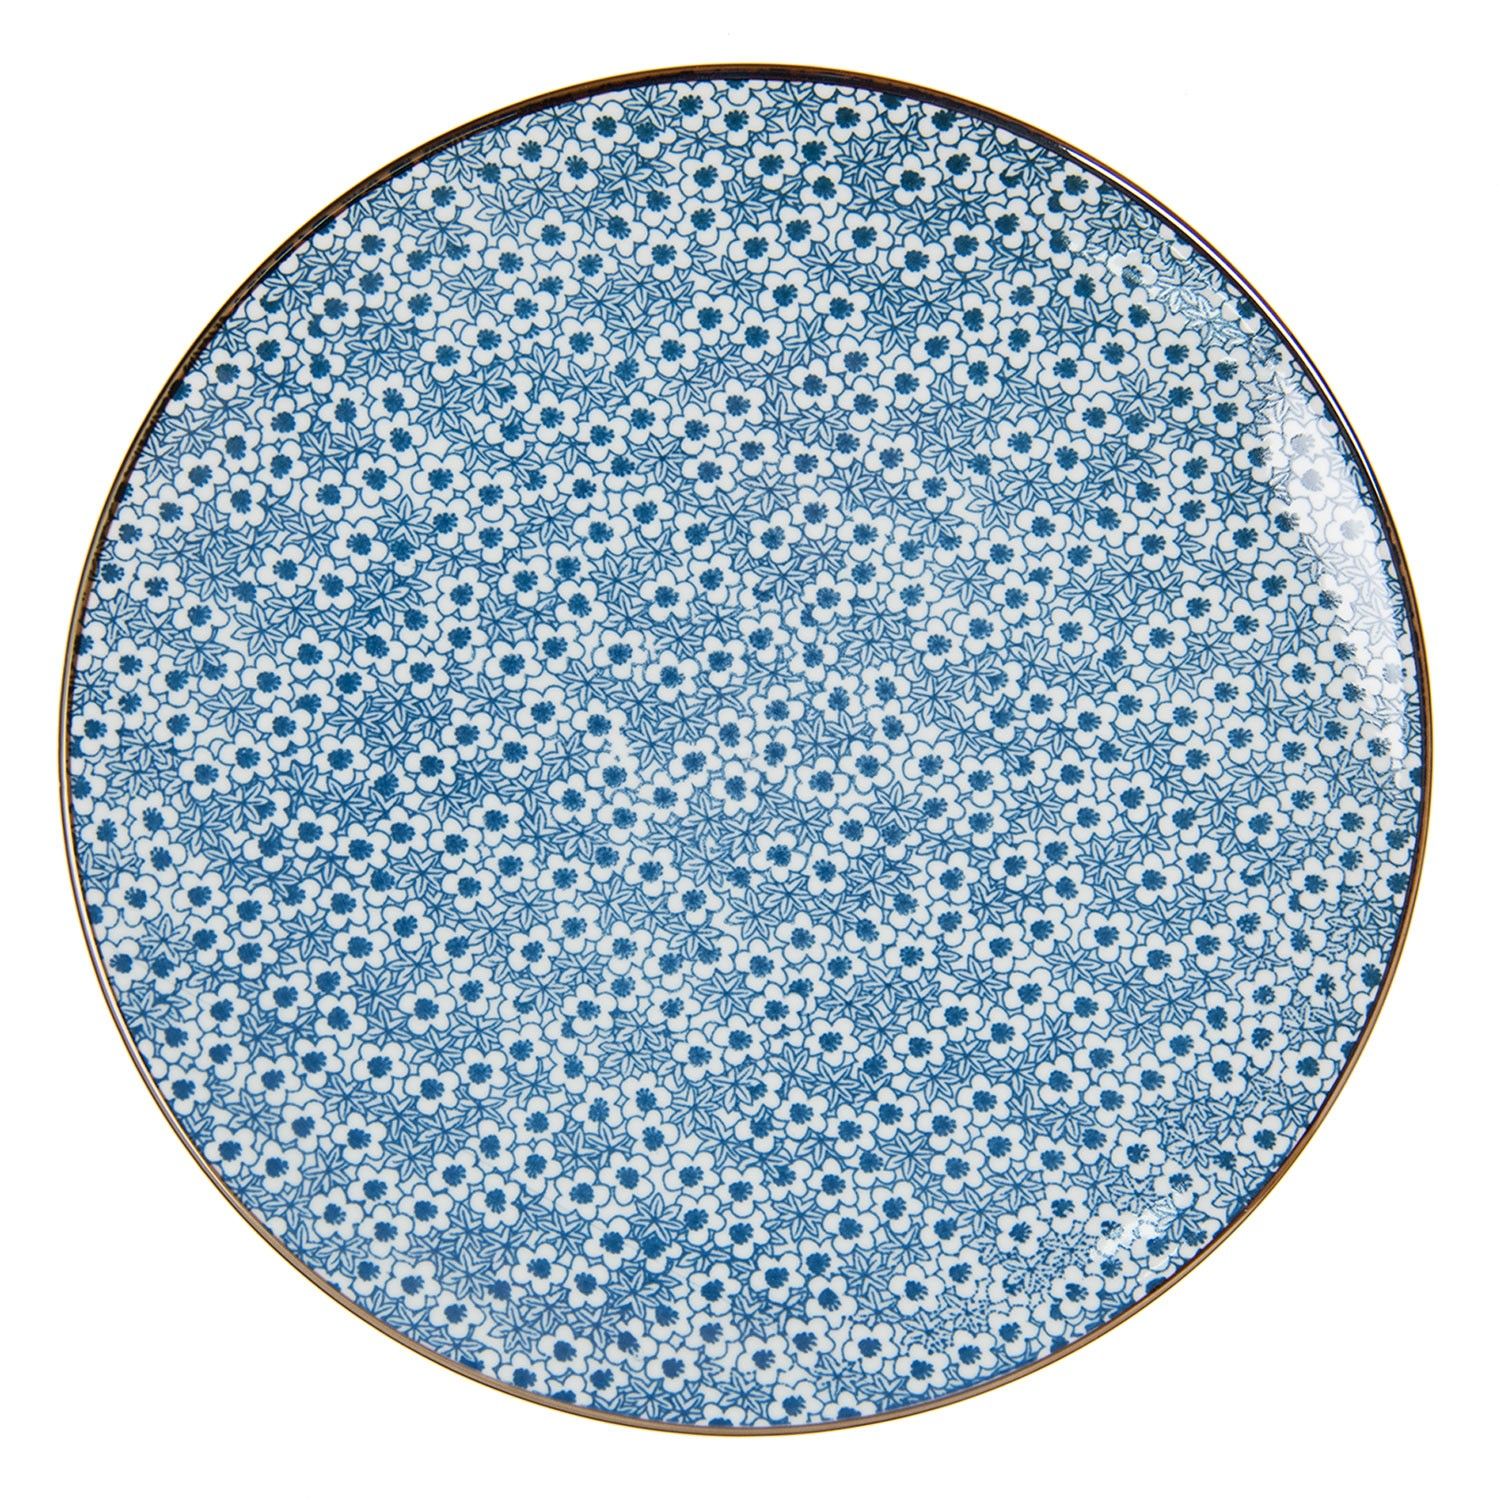 Jídelní talíř s modrými kvítky BlueFlowers - Ø  26 cm Clayre & Eef - LaHome - vintage dekorace